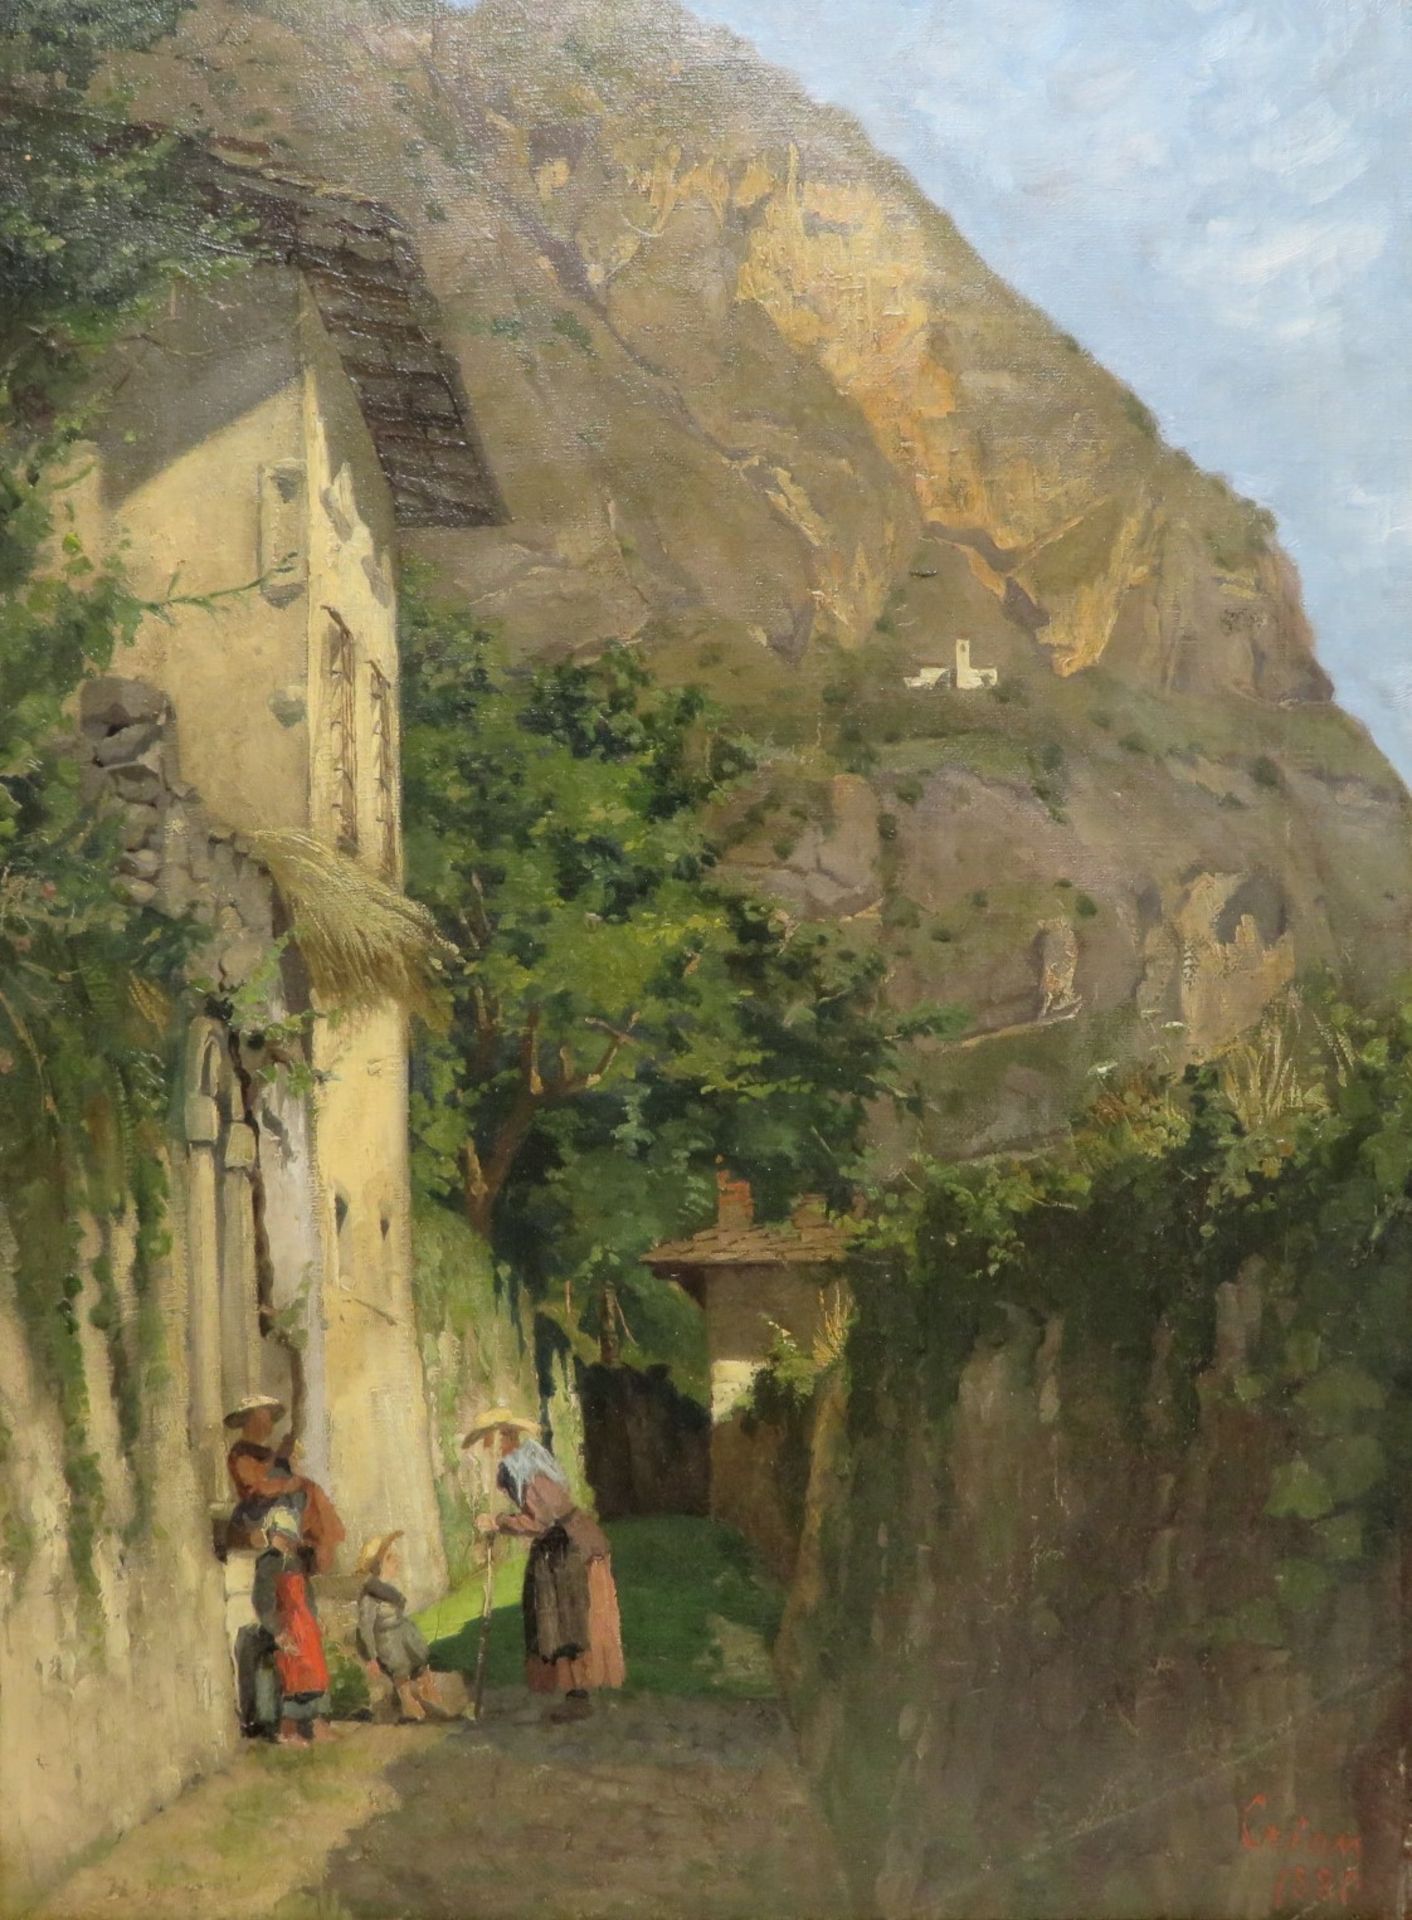 (Wohl) Crian, 1880, "Hausansicht bei Meran", li.u.unles.sign., Öl/Leinwand, dou